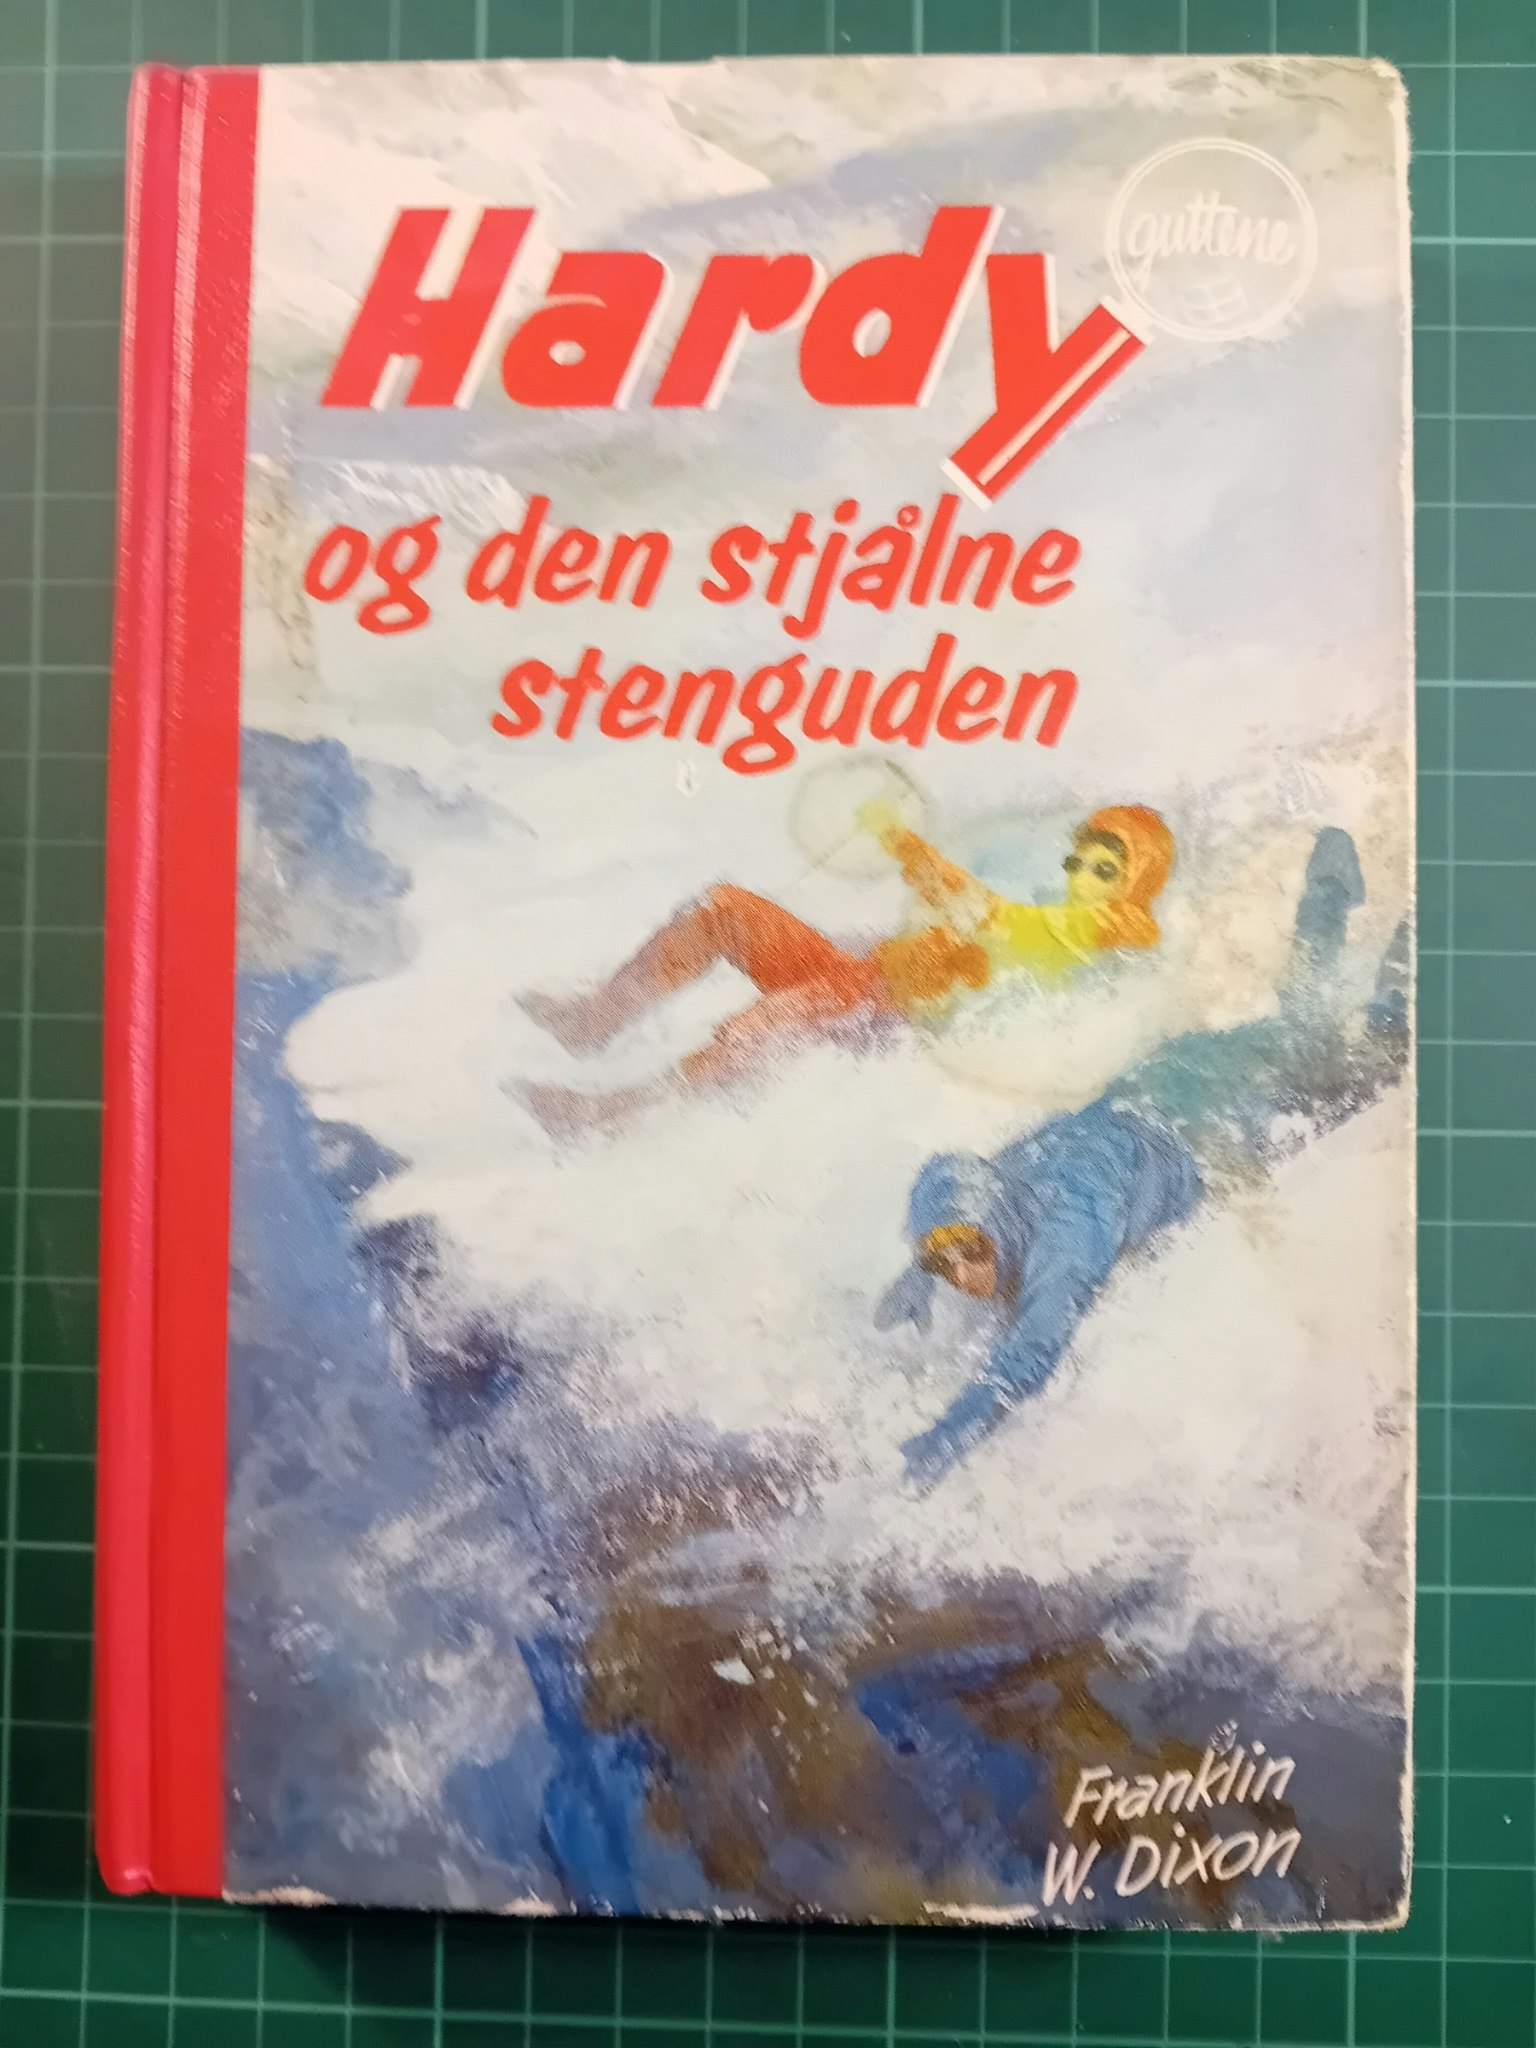 077: Hardy-guttene og den stjålne stenguden